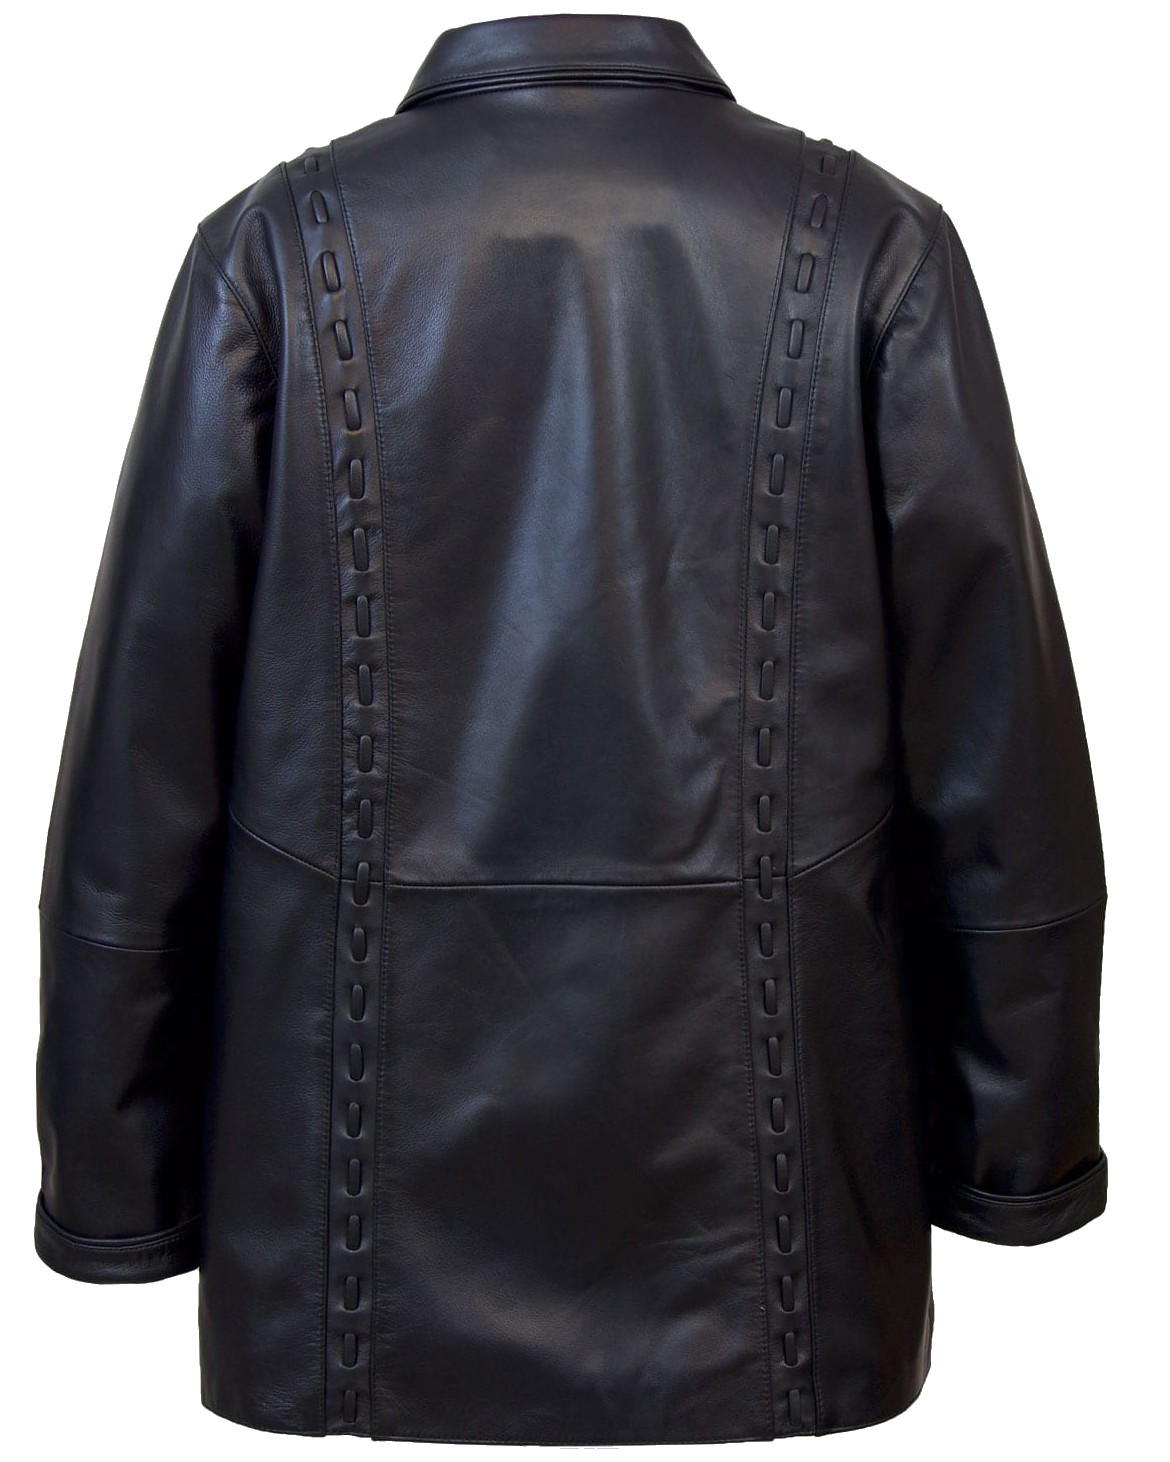 Barbara Women's Leather Coat